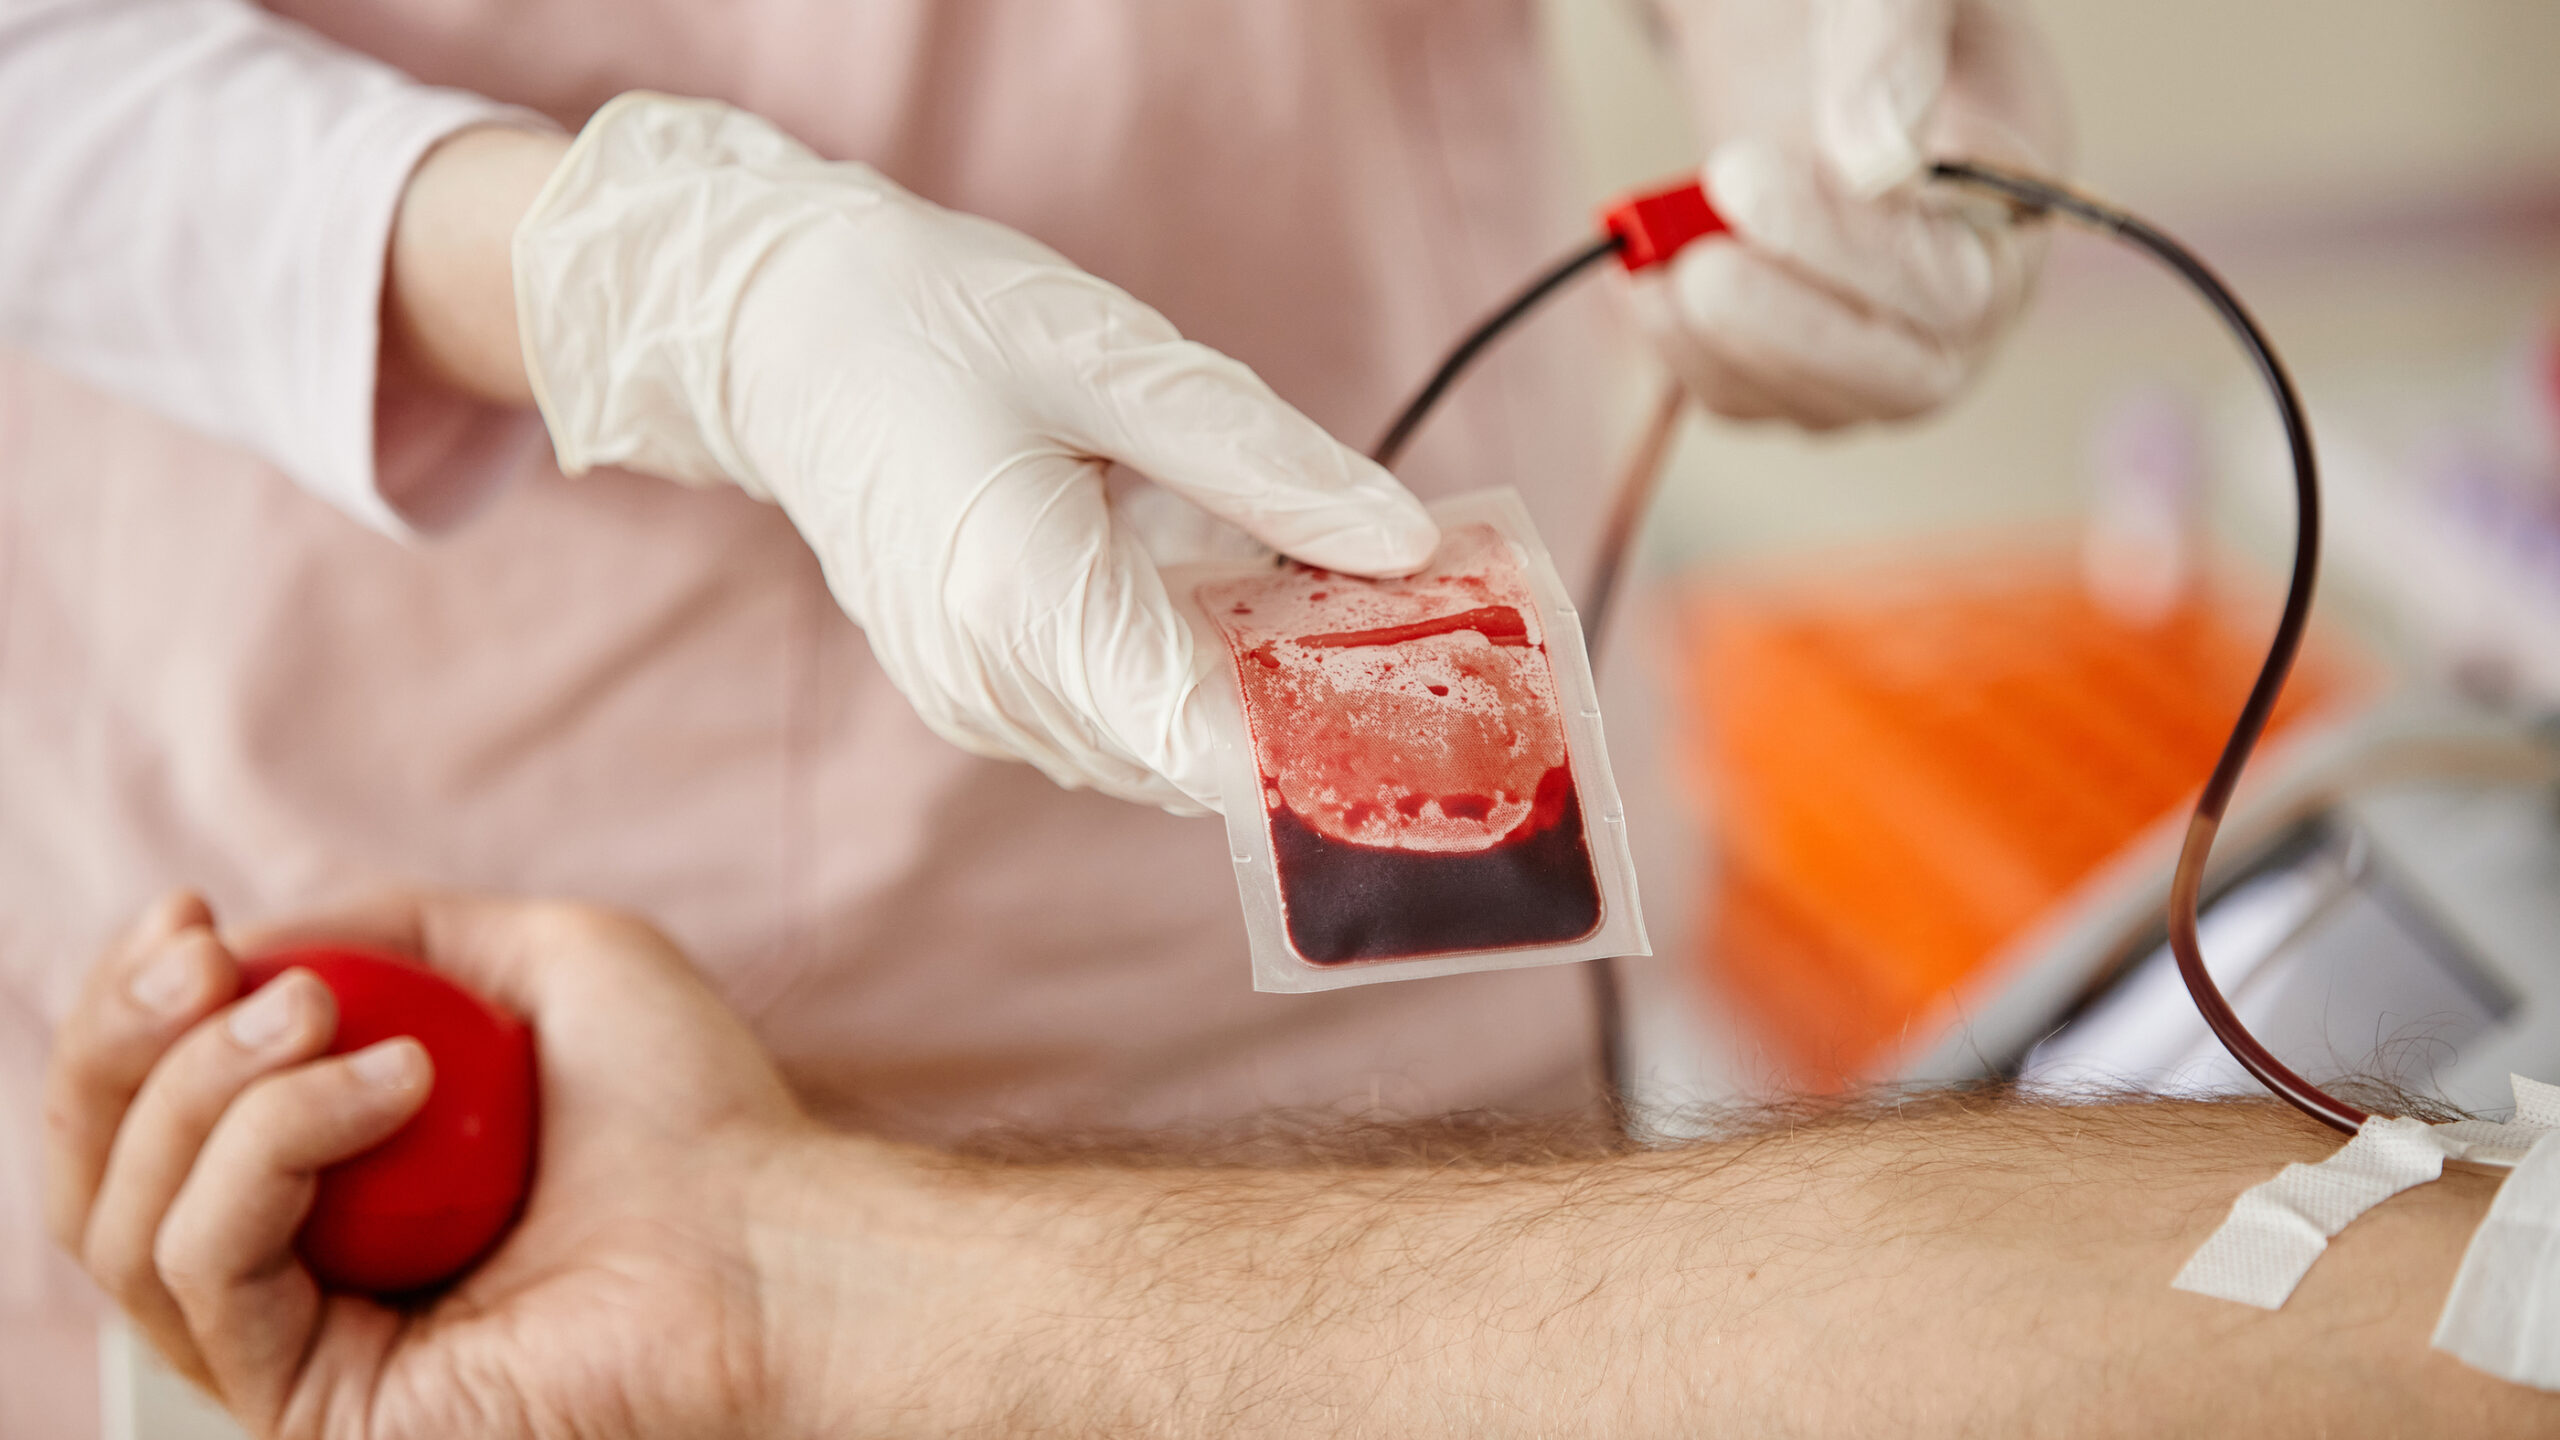 Se puede hacer análisis de sangre estando resfriado